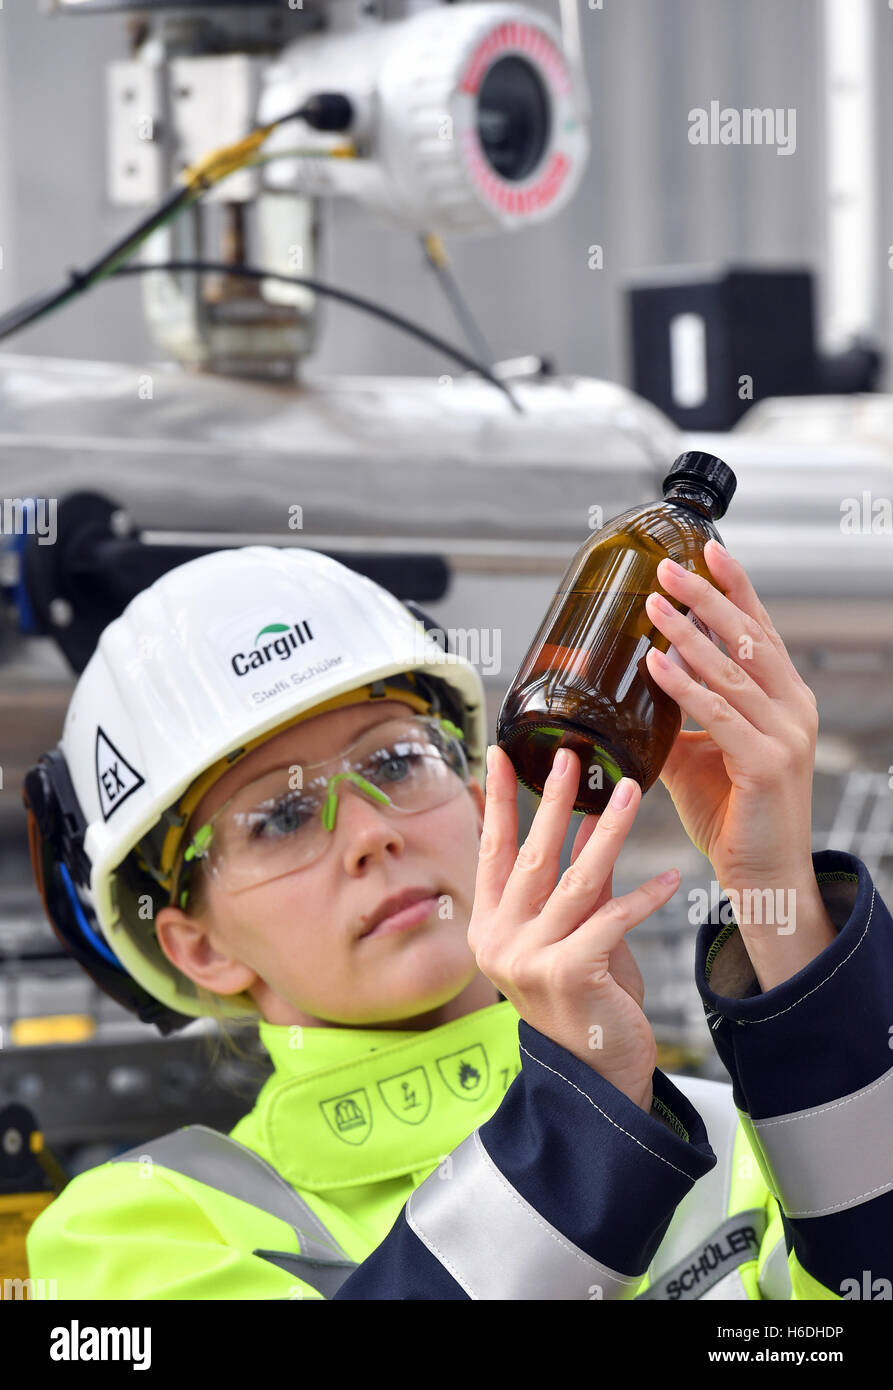 Barby, Allemagne. 27 Oct, 2016. Les employés de Cargill Stefanie Schueler travaillant sur la nouvelle usine d'éthanol de l'US-société américaine Cargill à Montmélian, Allemagne, 27 octobre 2016. Cargill exploite l'une des plus grandes usines d'amidon de blé européen en Saxe-Anhalt. Cette année, la production d'alcool premium a été ajouté. PHOTO : HENDRIK SCHMIDT/dpa/Alamy Live News Banque D'Images